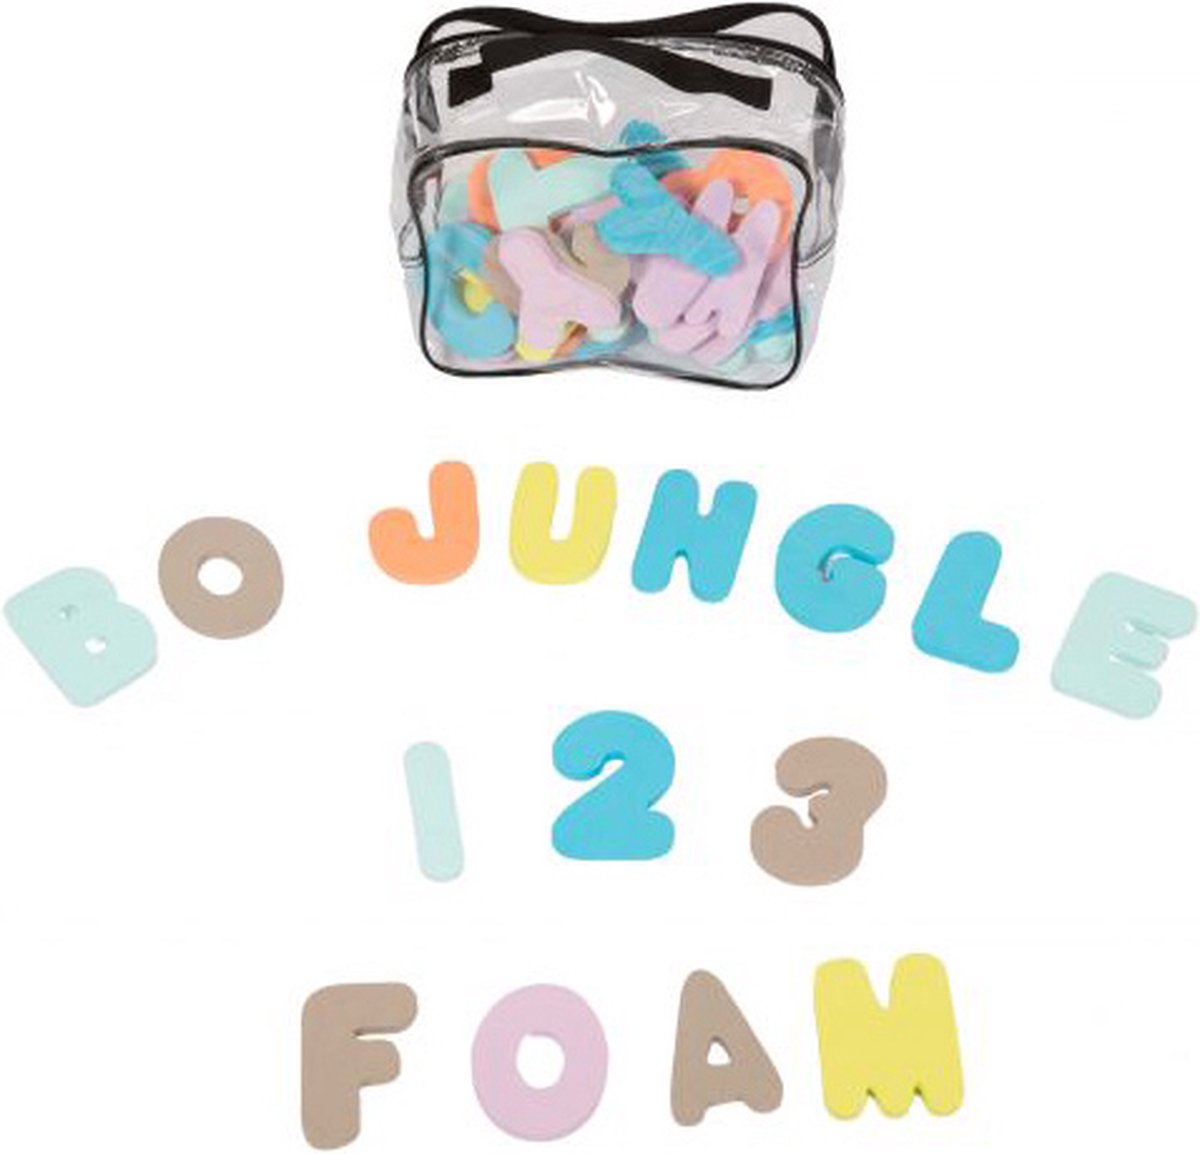 Bo Jungle B-Bath foam nummers en letters (36 stuks)